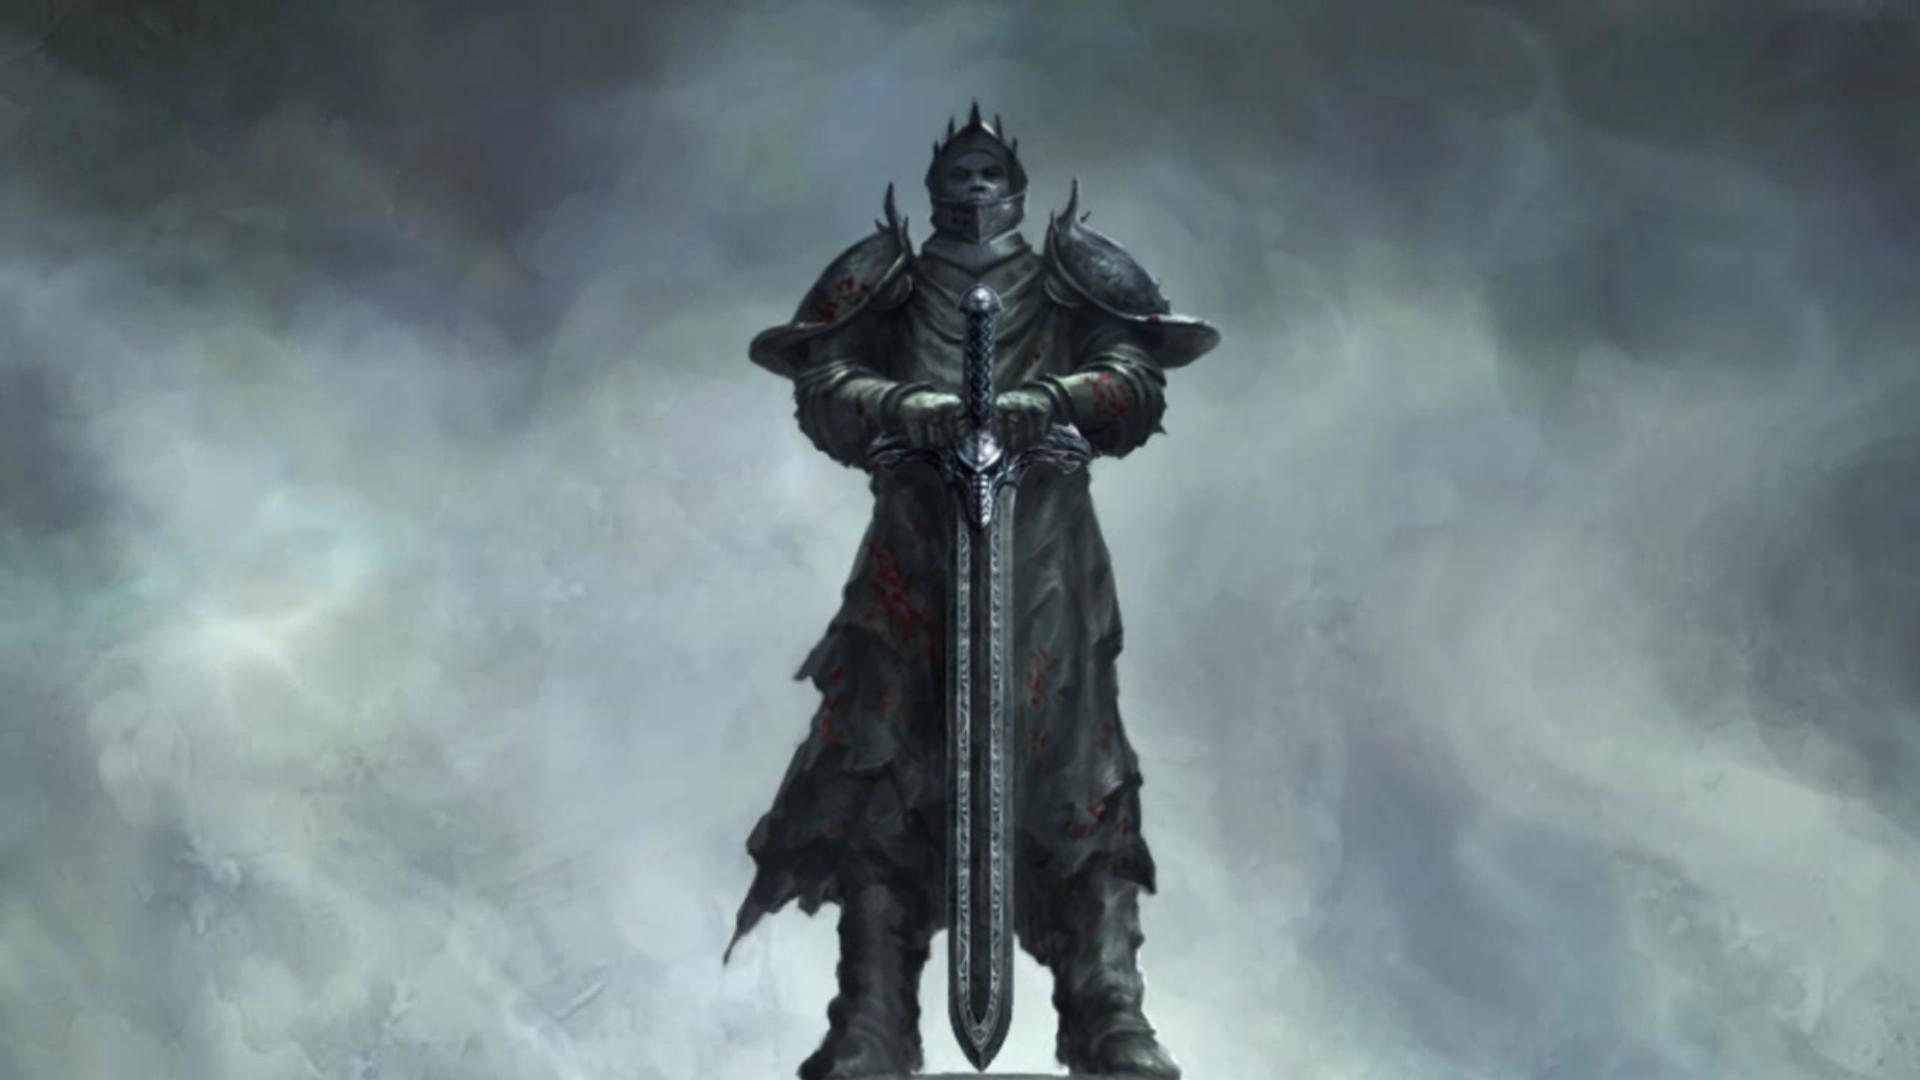 Король рыцарь вернувшийся с богами 56. Гайд воин двуручник скайрим. Skyrim меч тёмного крестоносца. Двуручник короля Артура.